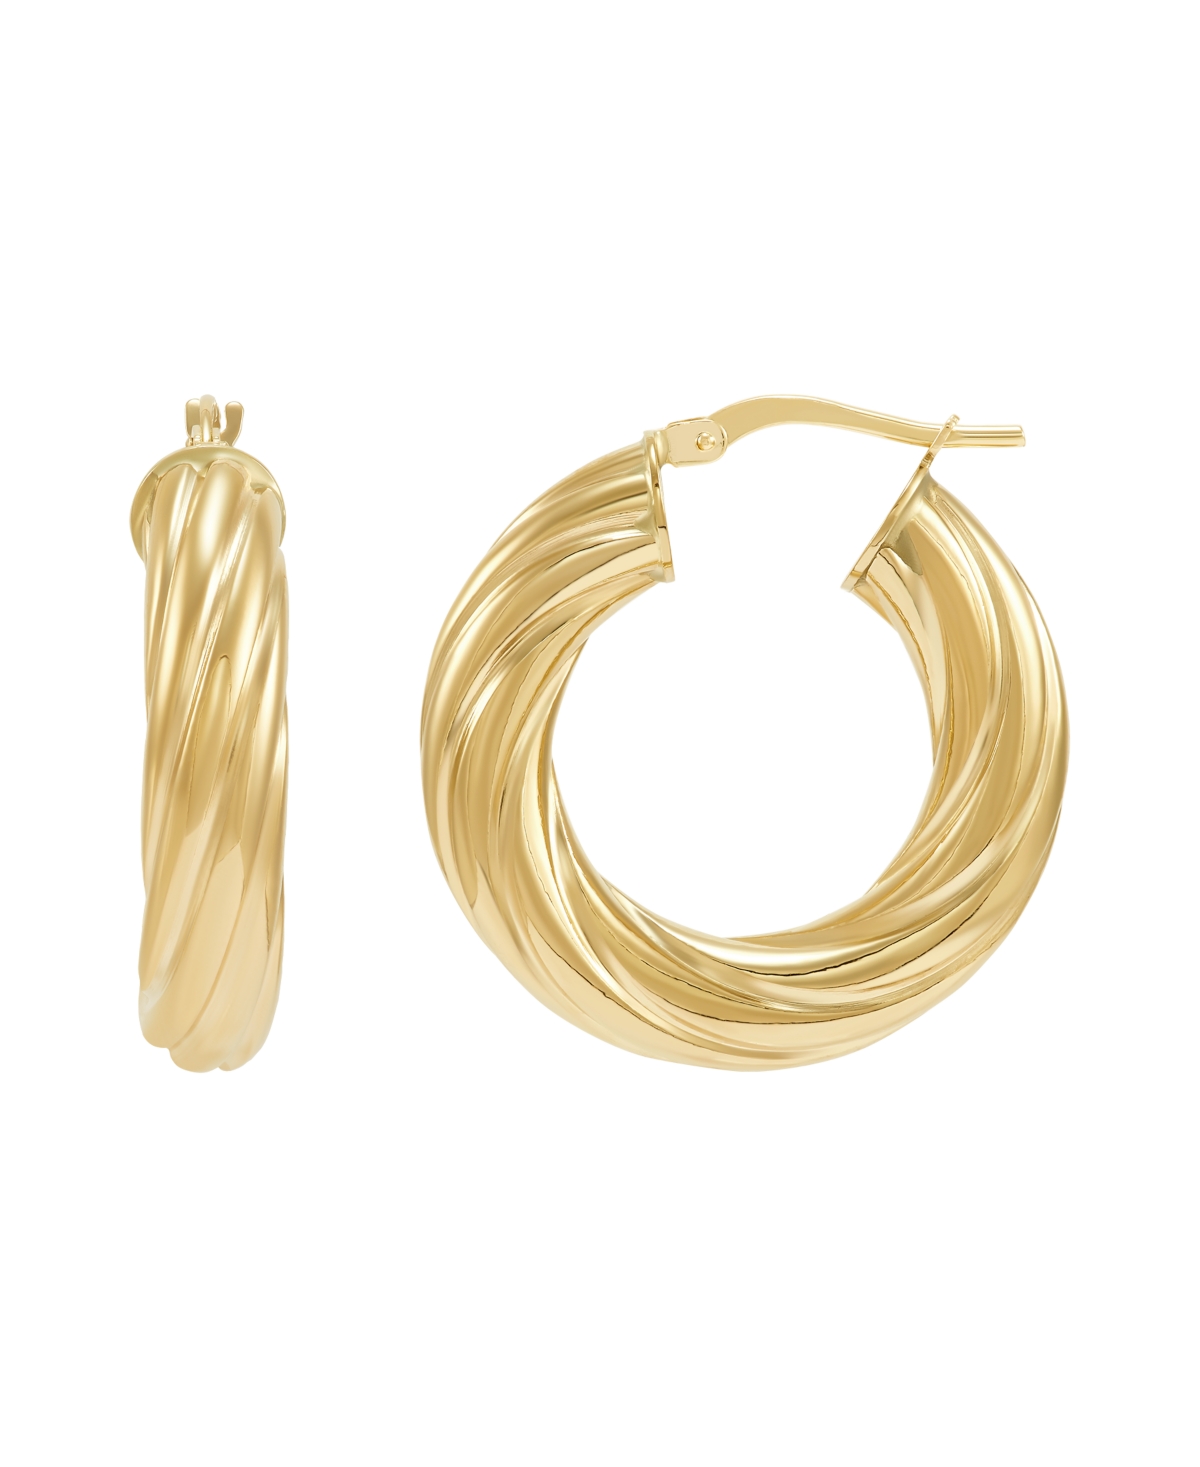 Twist Hoop Earrings in 14k Gold, 1 inch - Yellow Gold